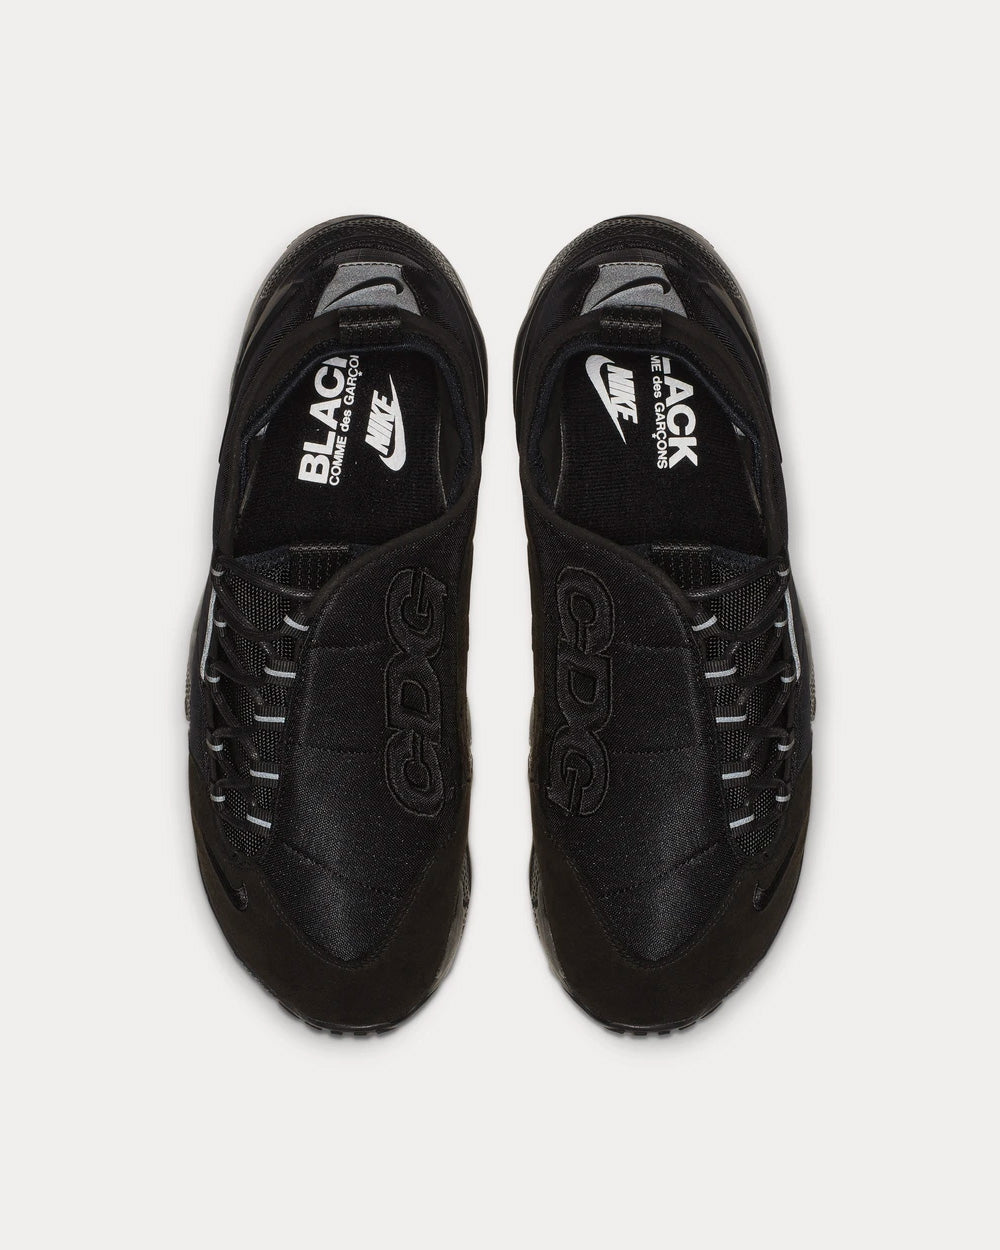 Nike x Comme des Garçons - Footscape Black Low Top Sneakers